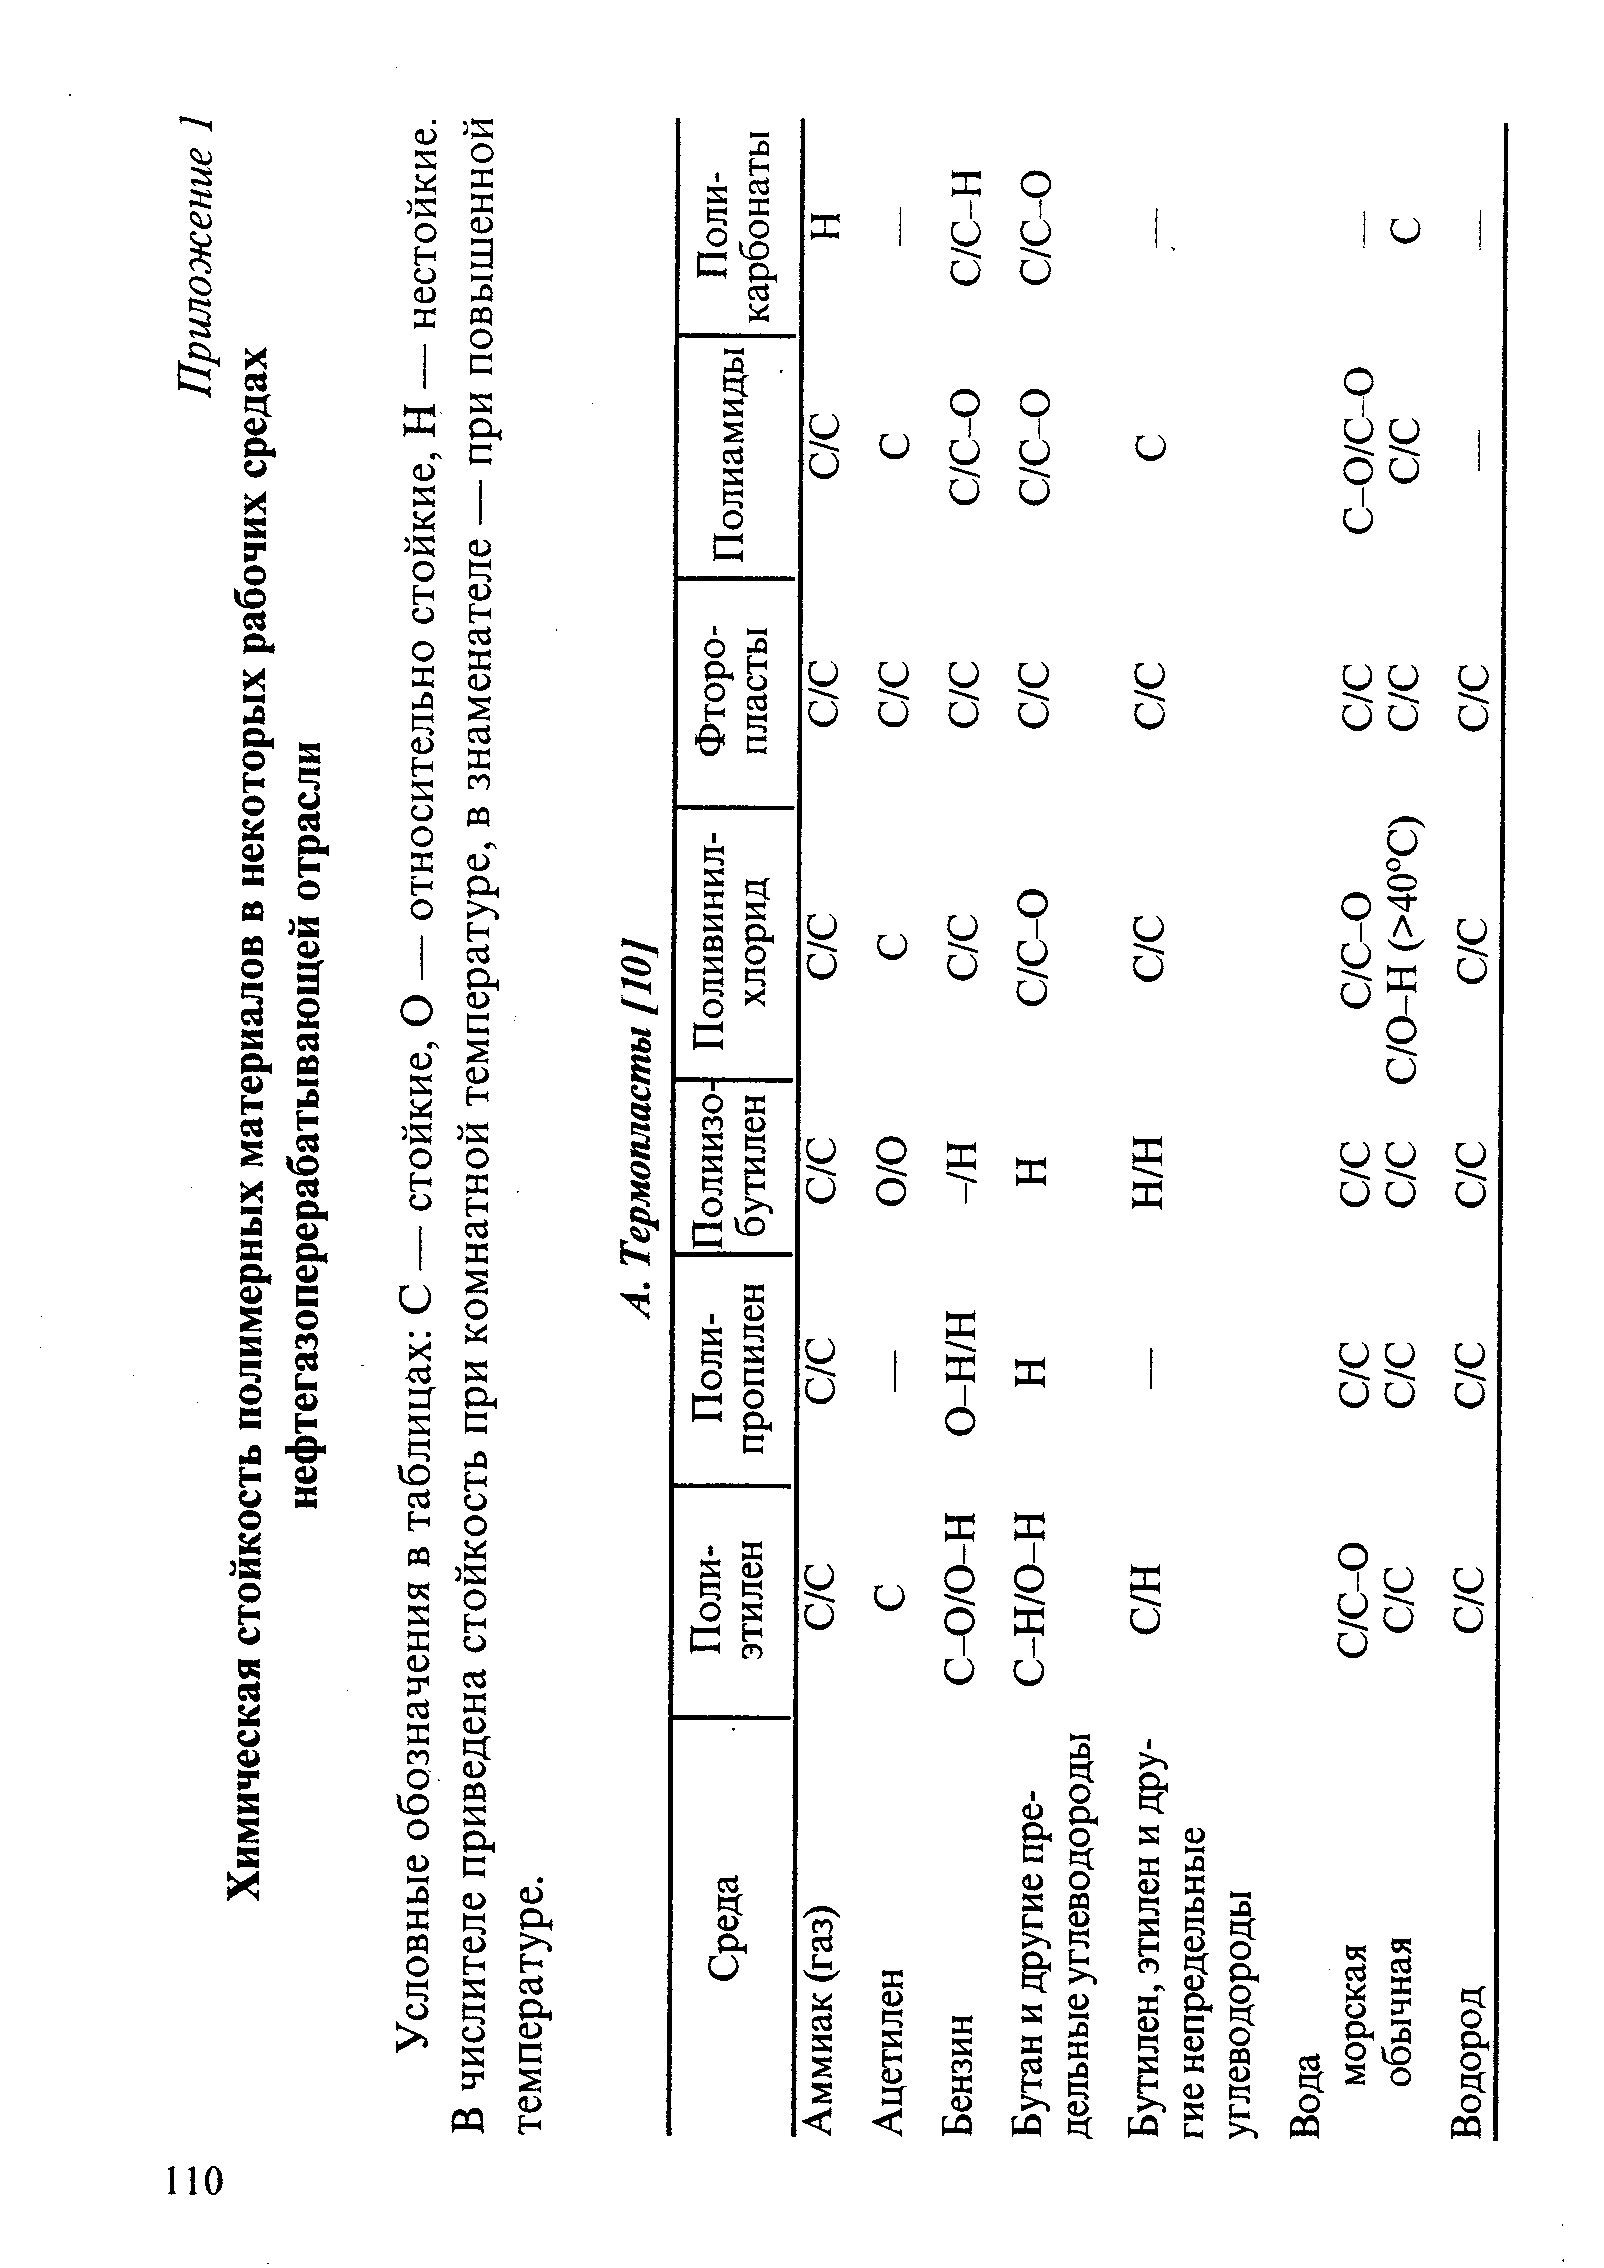 Условные обозначения в таблицах С — стойкие, О — относительно стойкие, Н — нестойкие. В числителе приведена стойкость при комнатной температуре, в знаменателе — при повышенной температуре.
